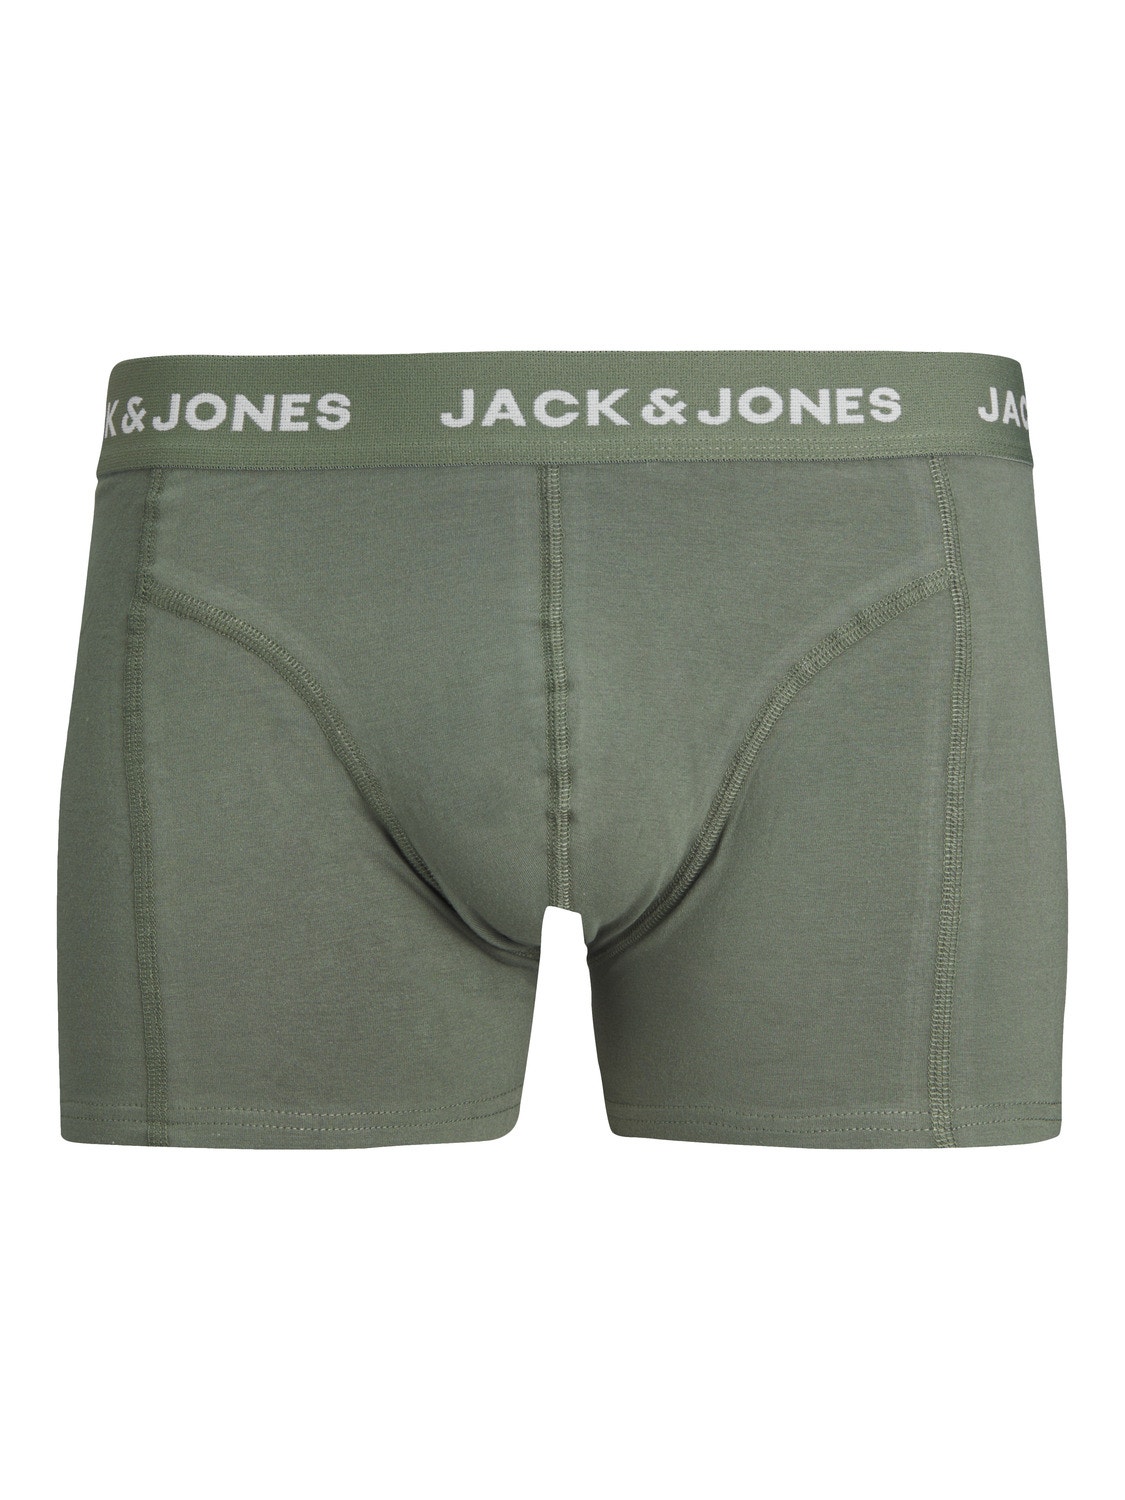 Jack & Jones Confezione da 3 Boxer -Tap Shoe - 12256550